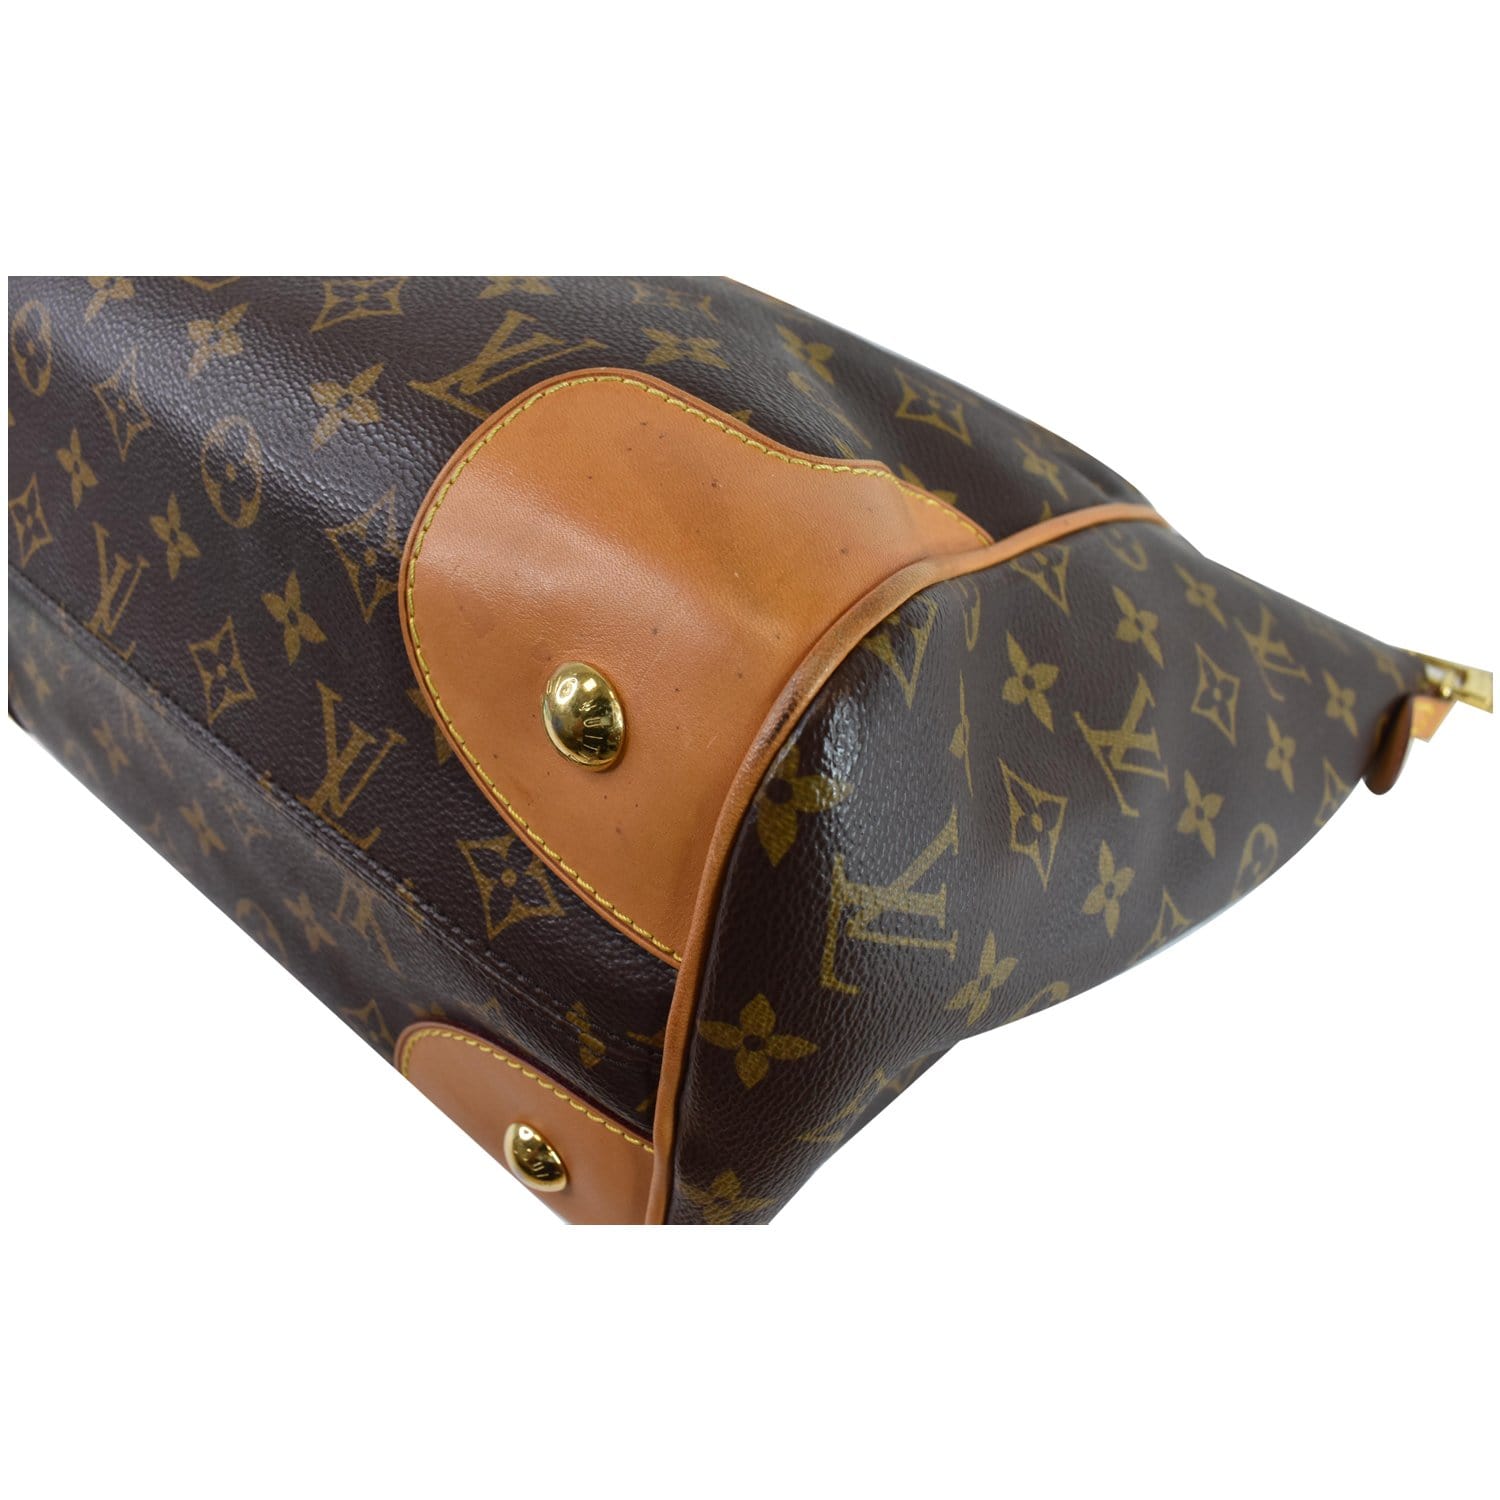 Authentic Louis Vuitton Classic Monogram Estrella NM Tote Bag